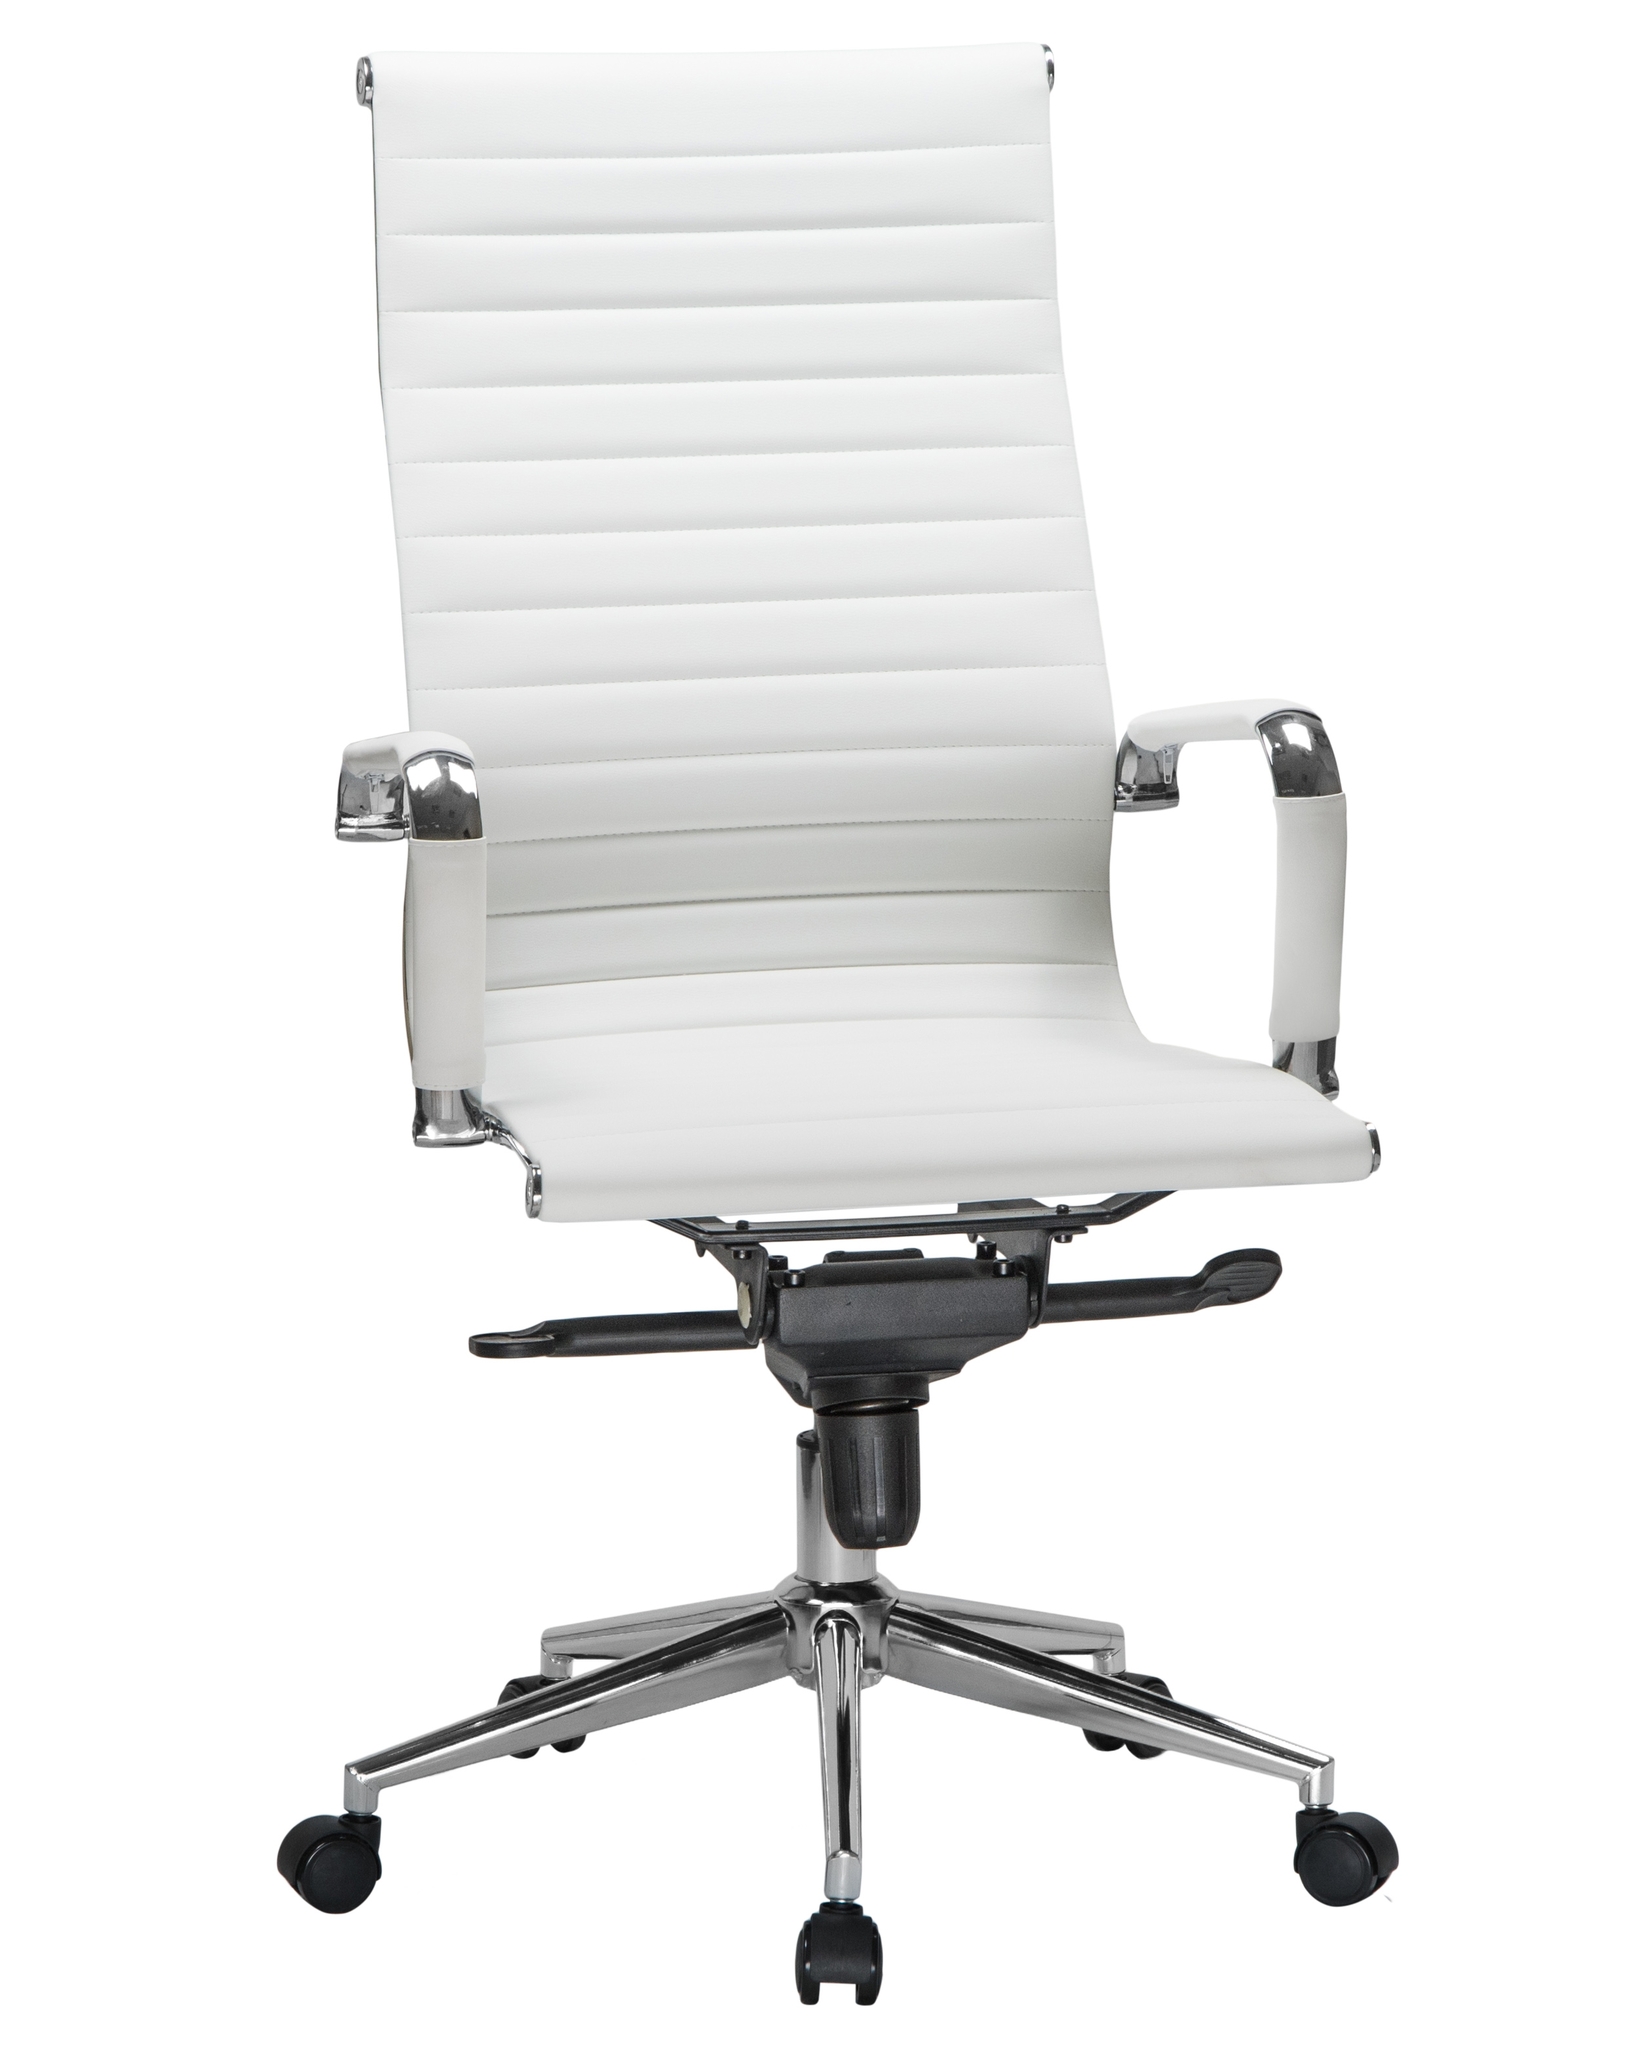 Офисное кресло Империя стульев Bond белый LMR-101F white